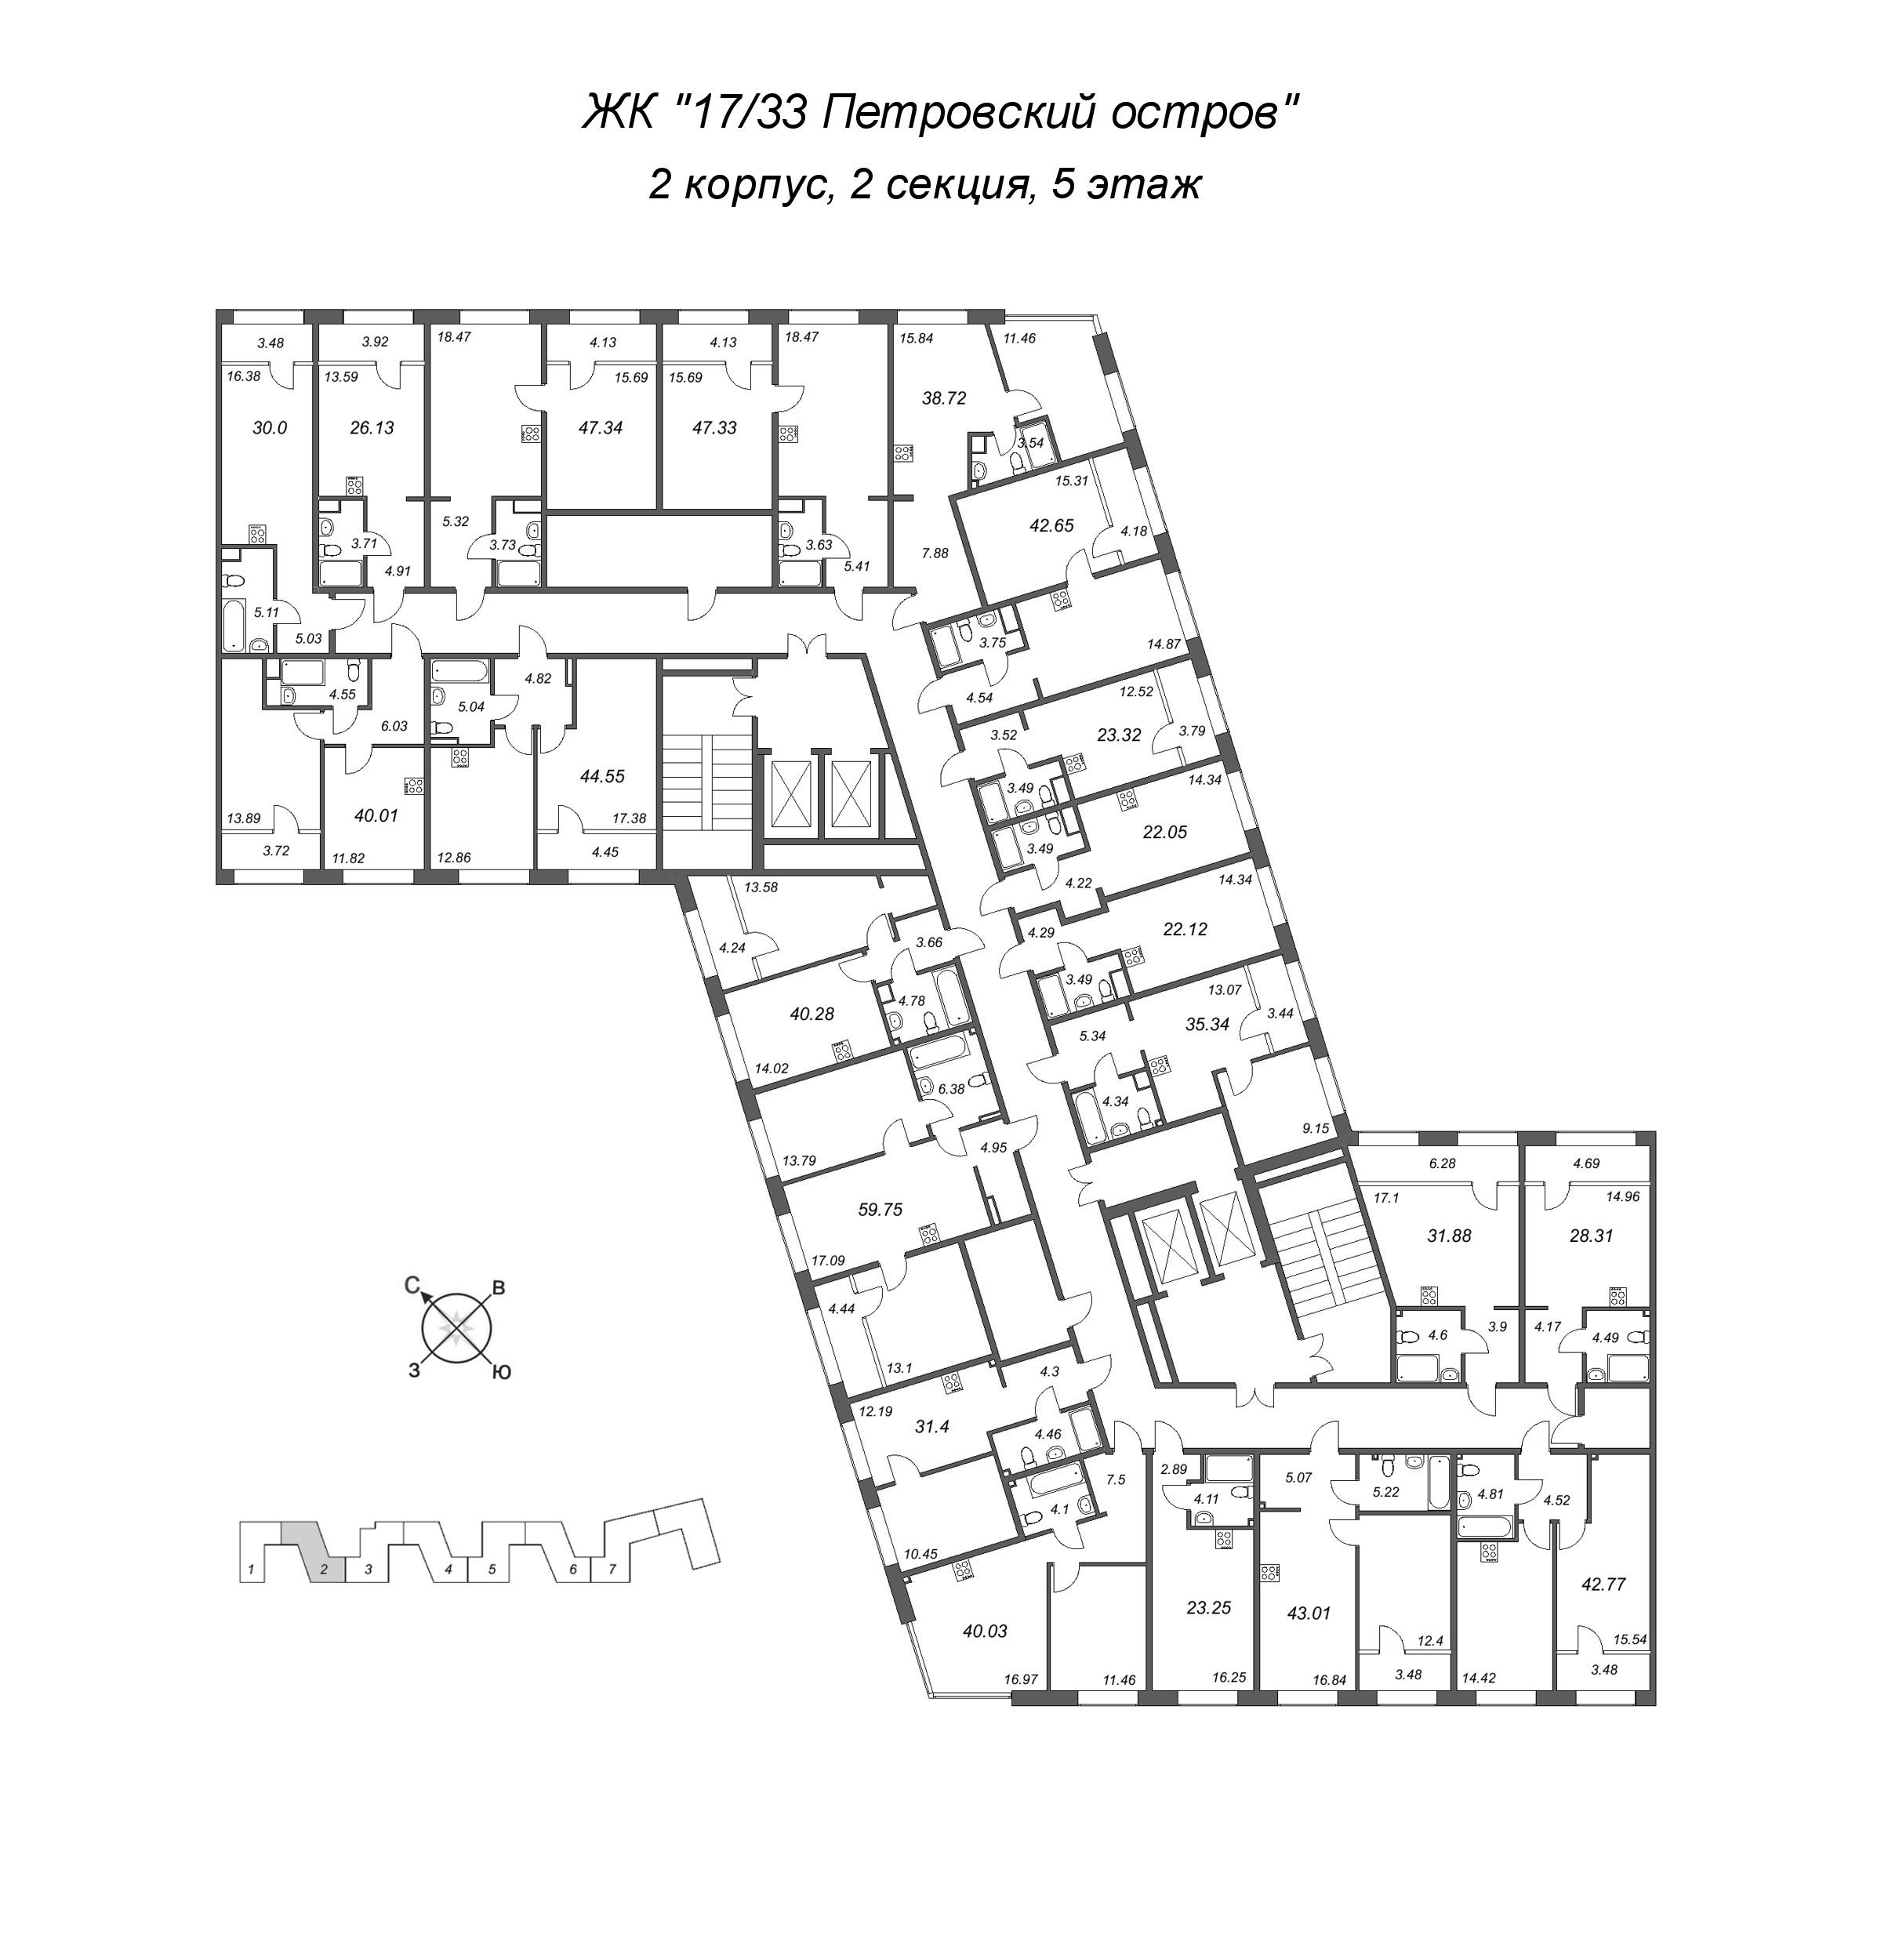 1-комнатная квартира, 40.28 м² в ЖК "17/33 Петровский остров" - планировка этажа